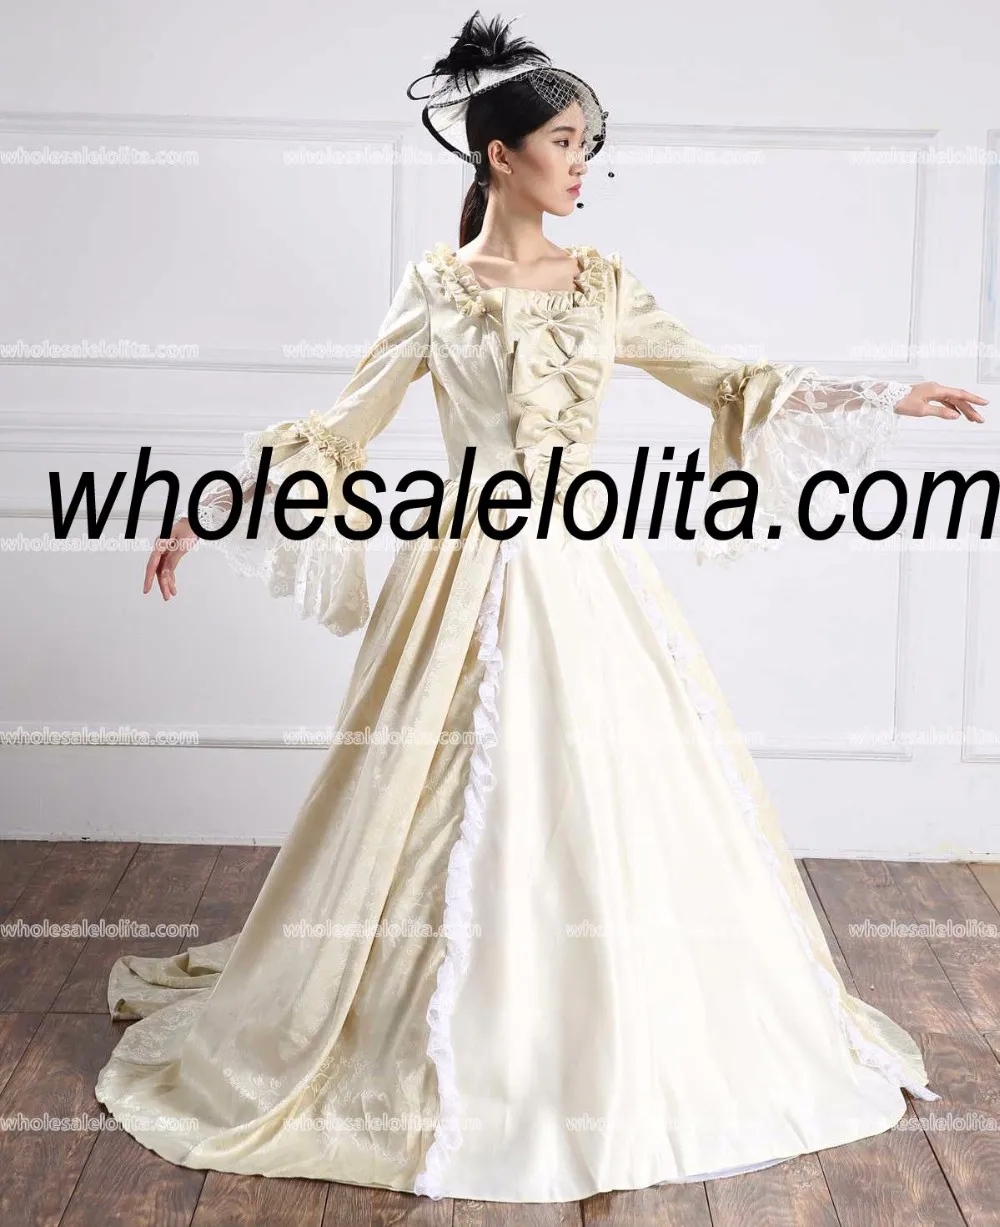 Викторианская эпоха платье/Southern Belle Платье короля Георга, театральное платье/платье для проведения реконструкции исторических событий/18th века бальное платье